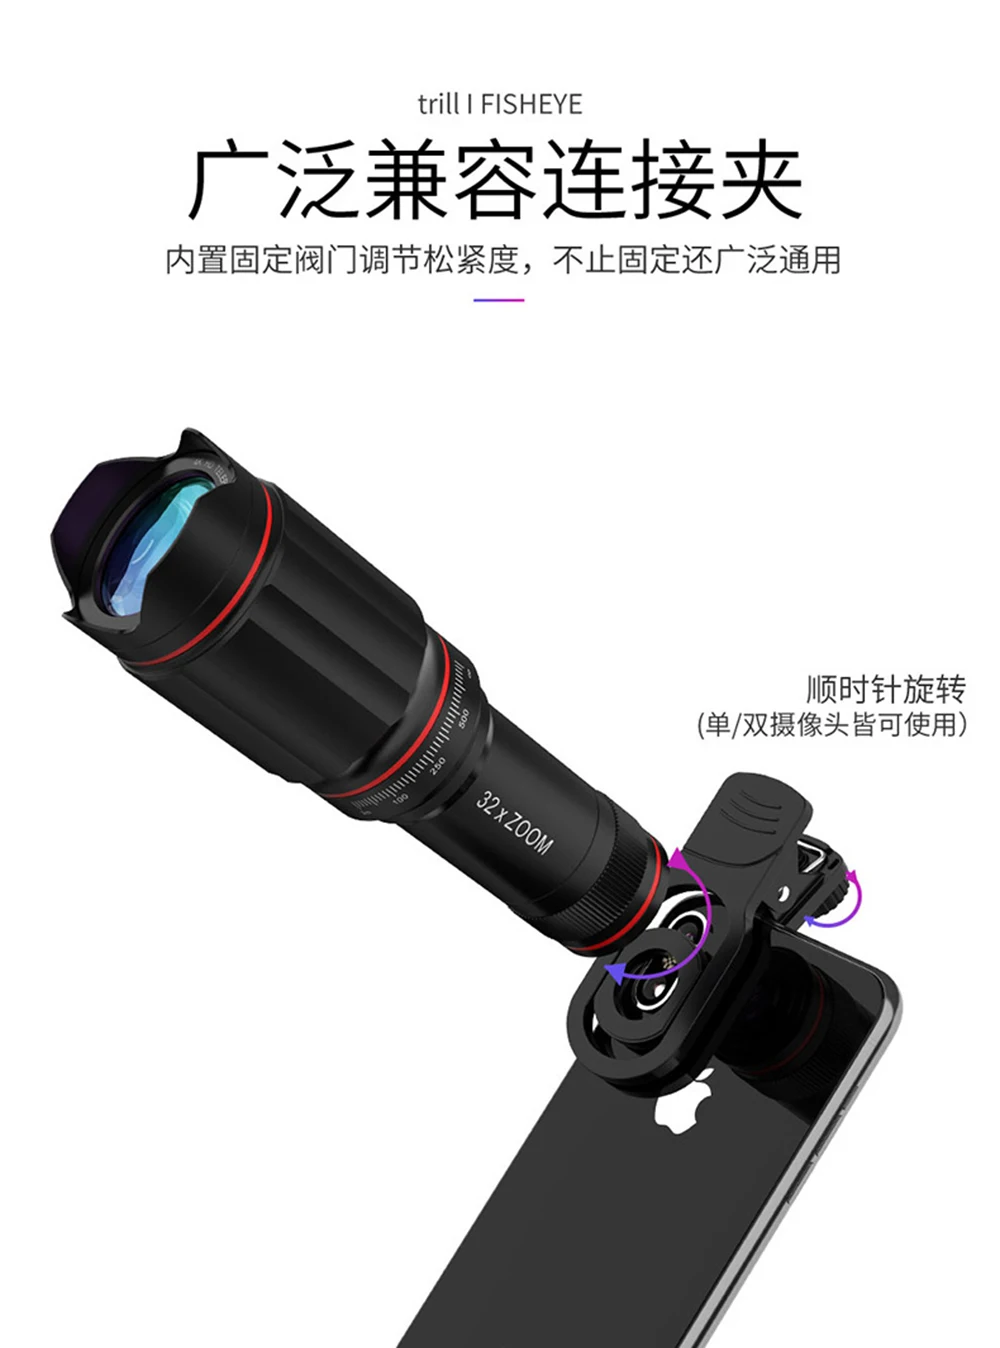 TOKOHANSUN дополнительно HD 22X металлический телескоп телеобъектив Монокуляр Мобильный объектив+ селфи Штатив для samsung huawei все смартфон